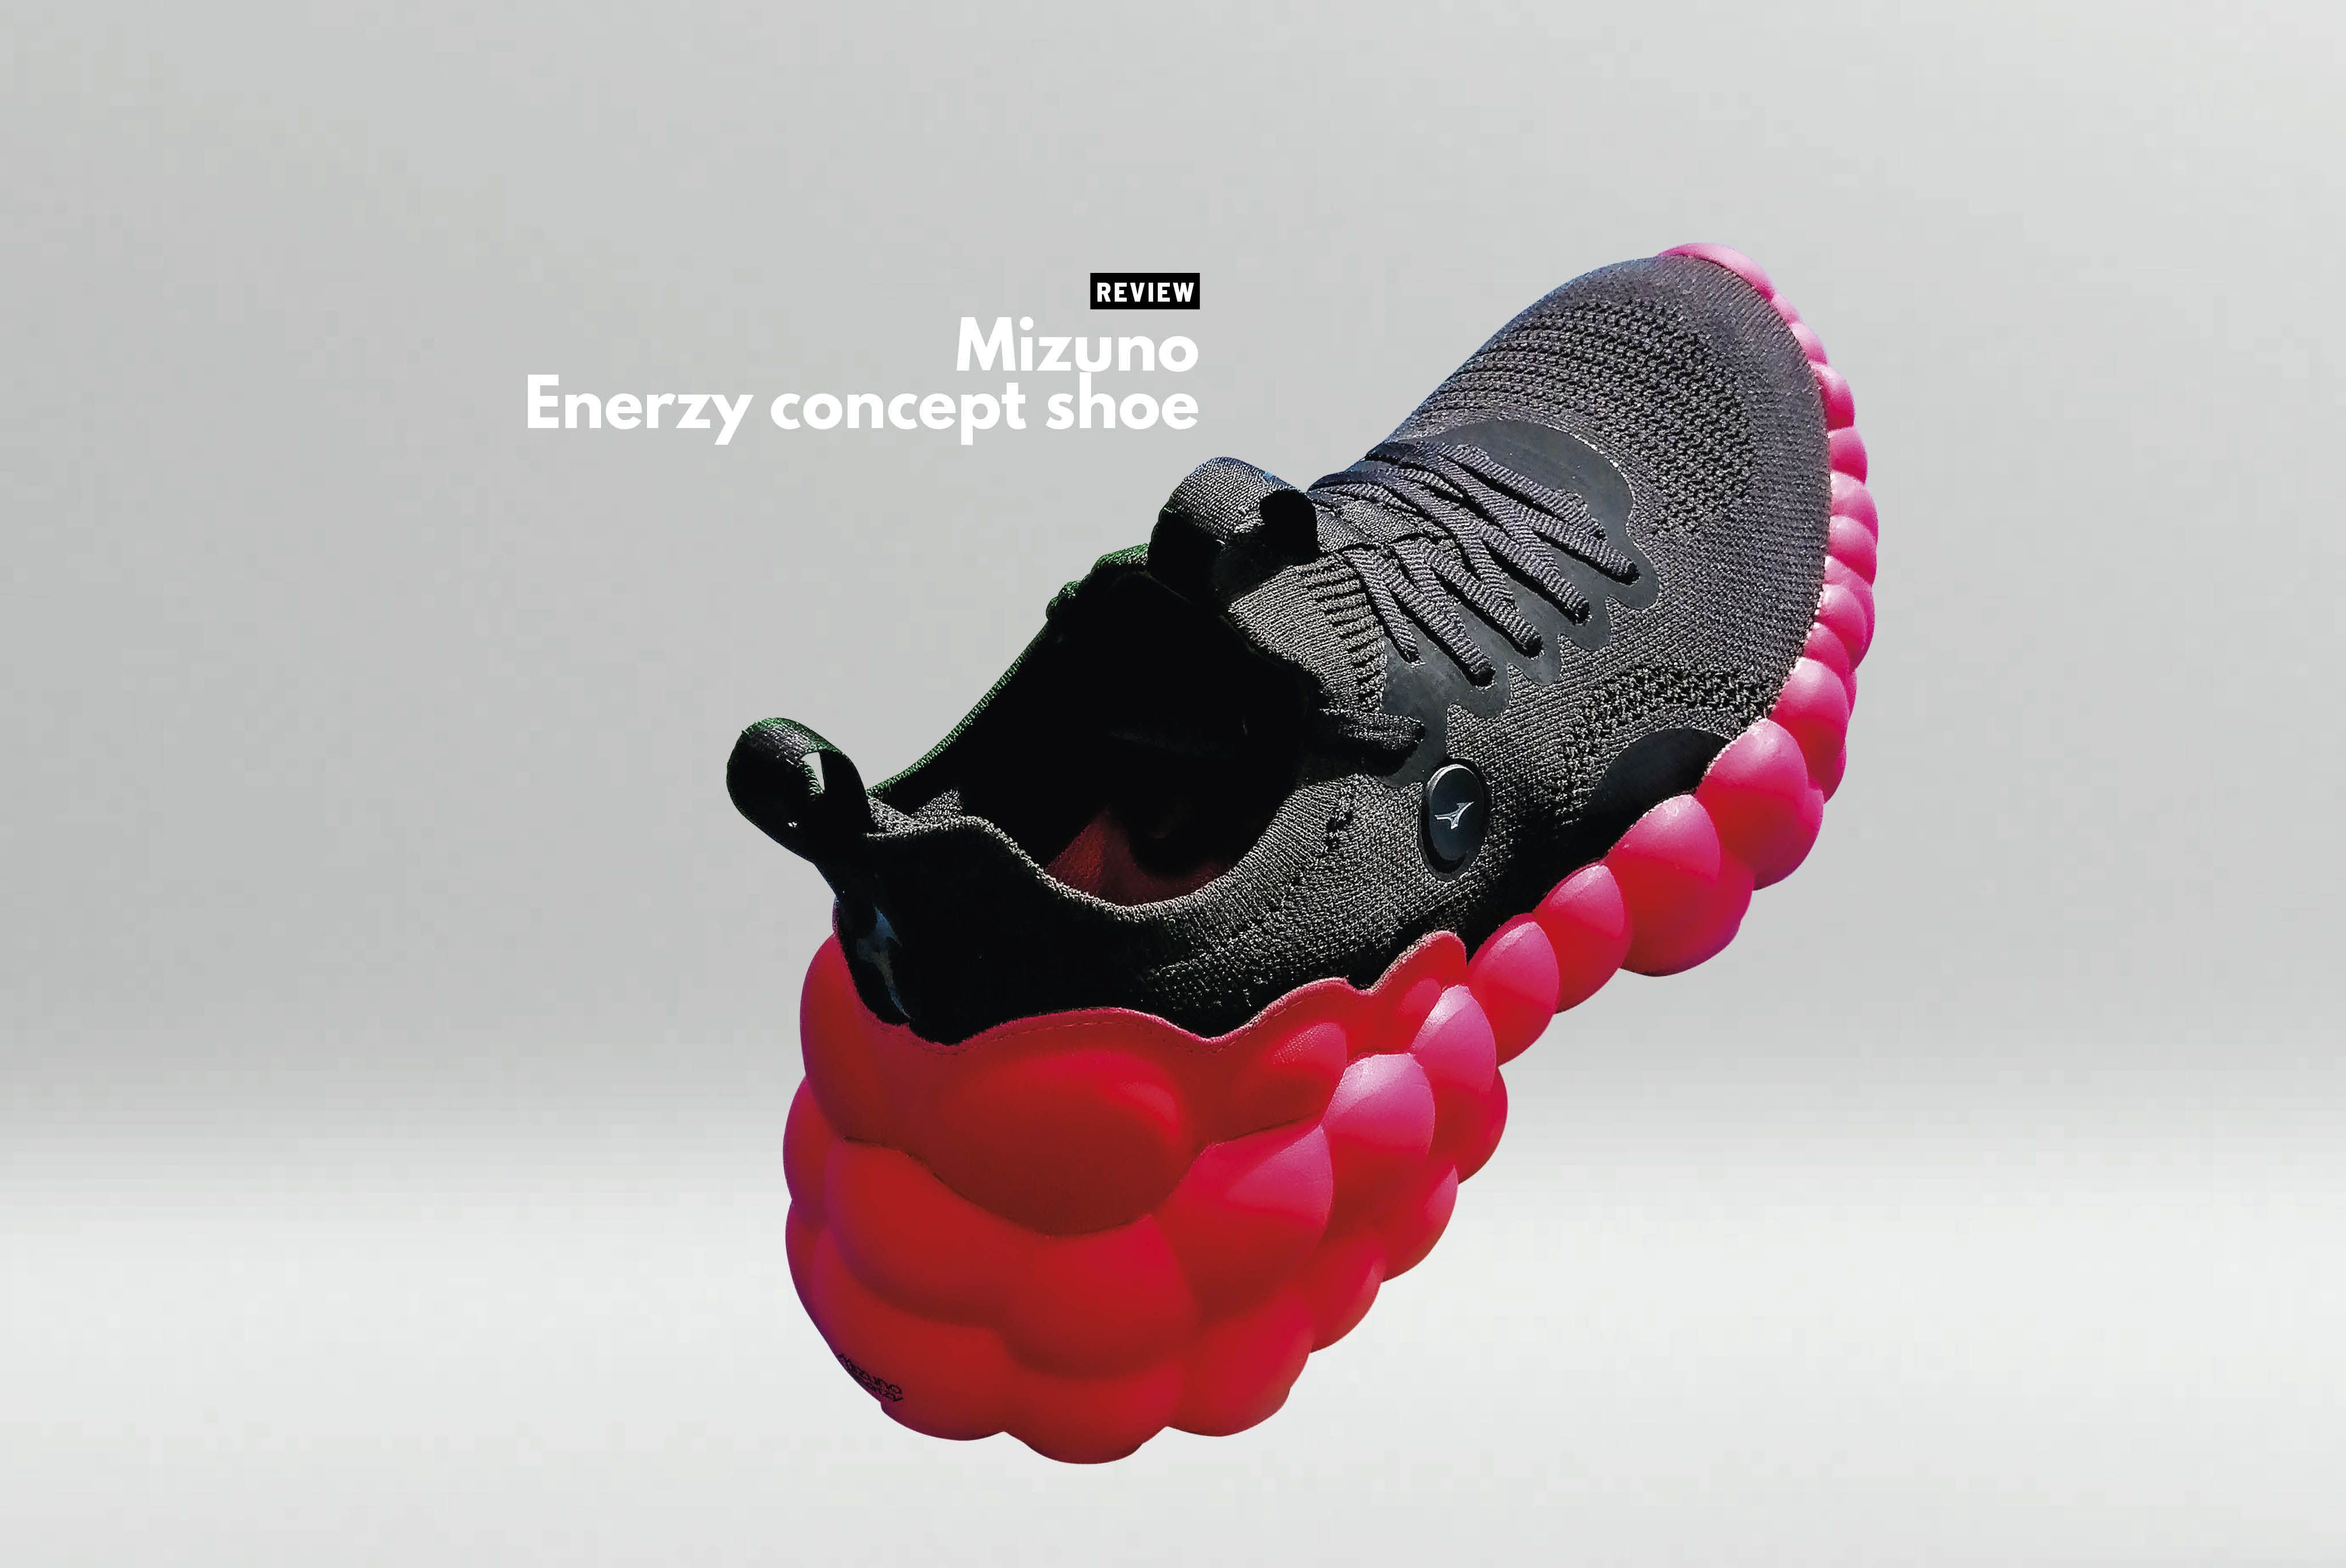 Het begin Alternatief pariteit Review: Mizuno Enerzy concept shoe